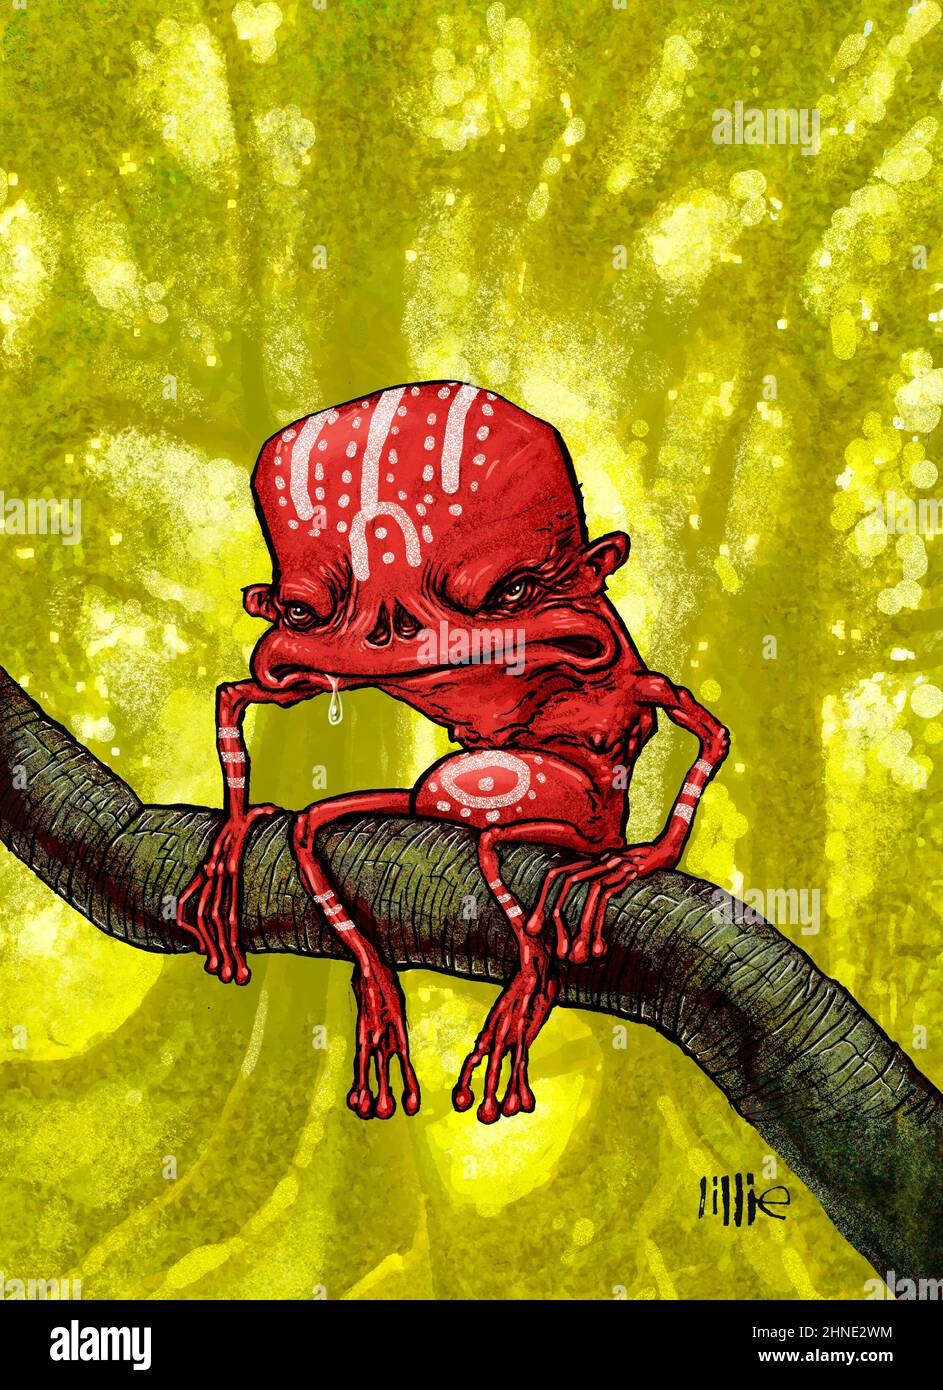 Kunst/Illustration eines Yara-ma-yha-Who, einer legendären Kreatur, die in der Mythologie der australischen Aborigines gefunden wurde. Das rote, froschähnliche Monster lebt in fiesen Bäumen Stockfoto